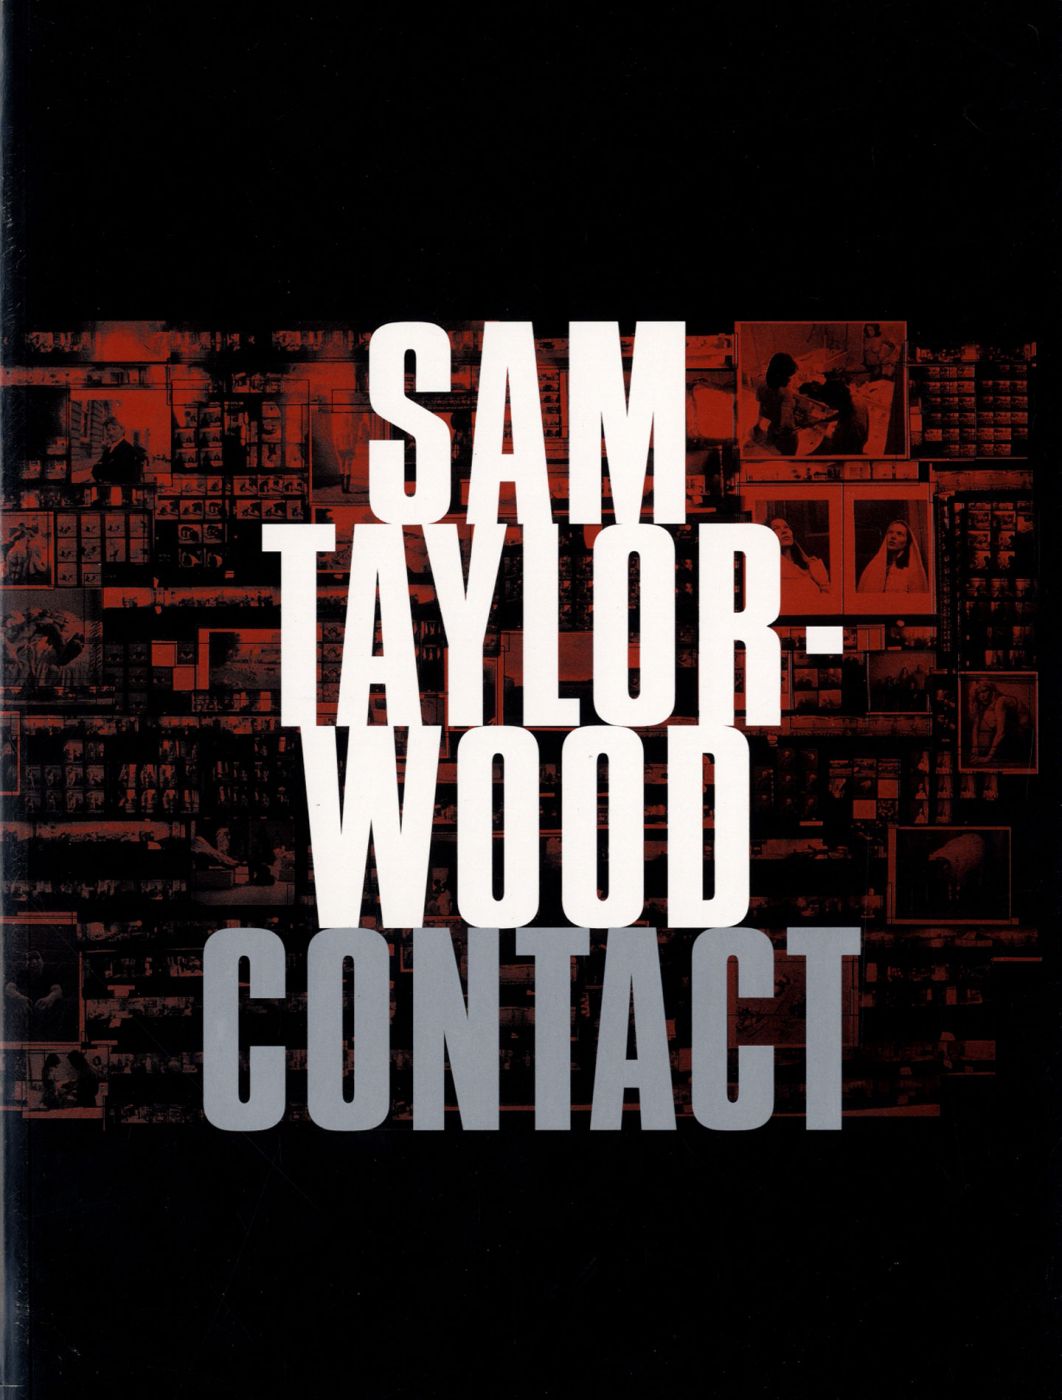 Sam Taylor-Wood: Contact